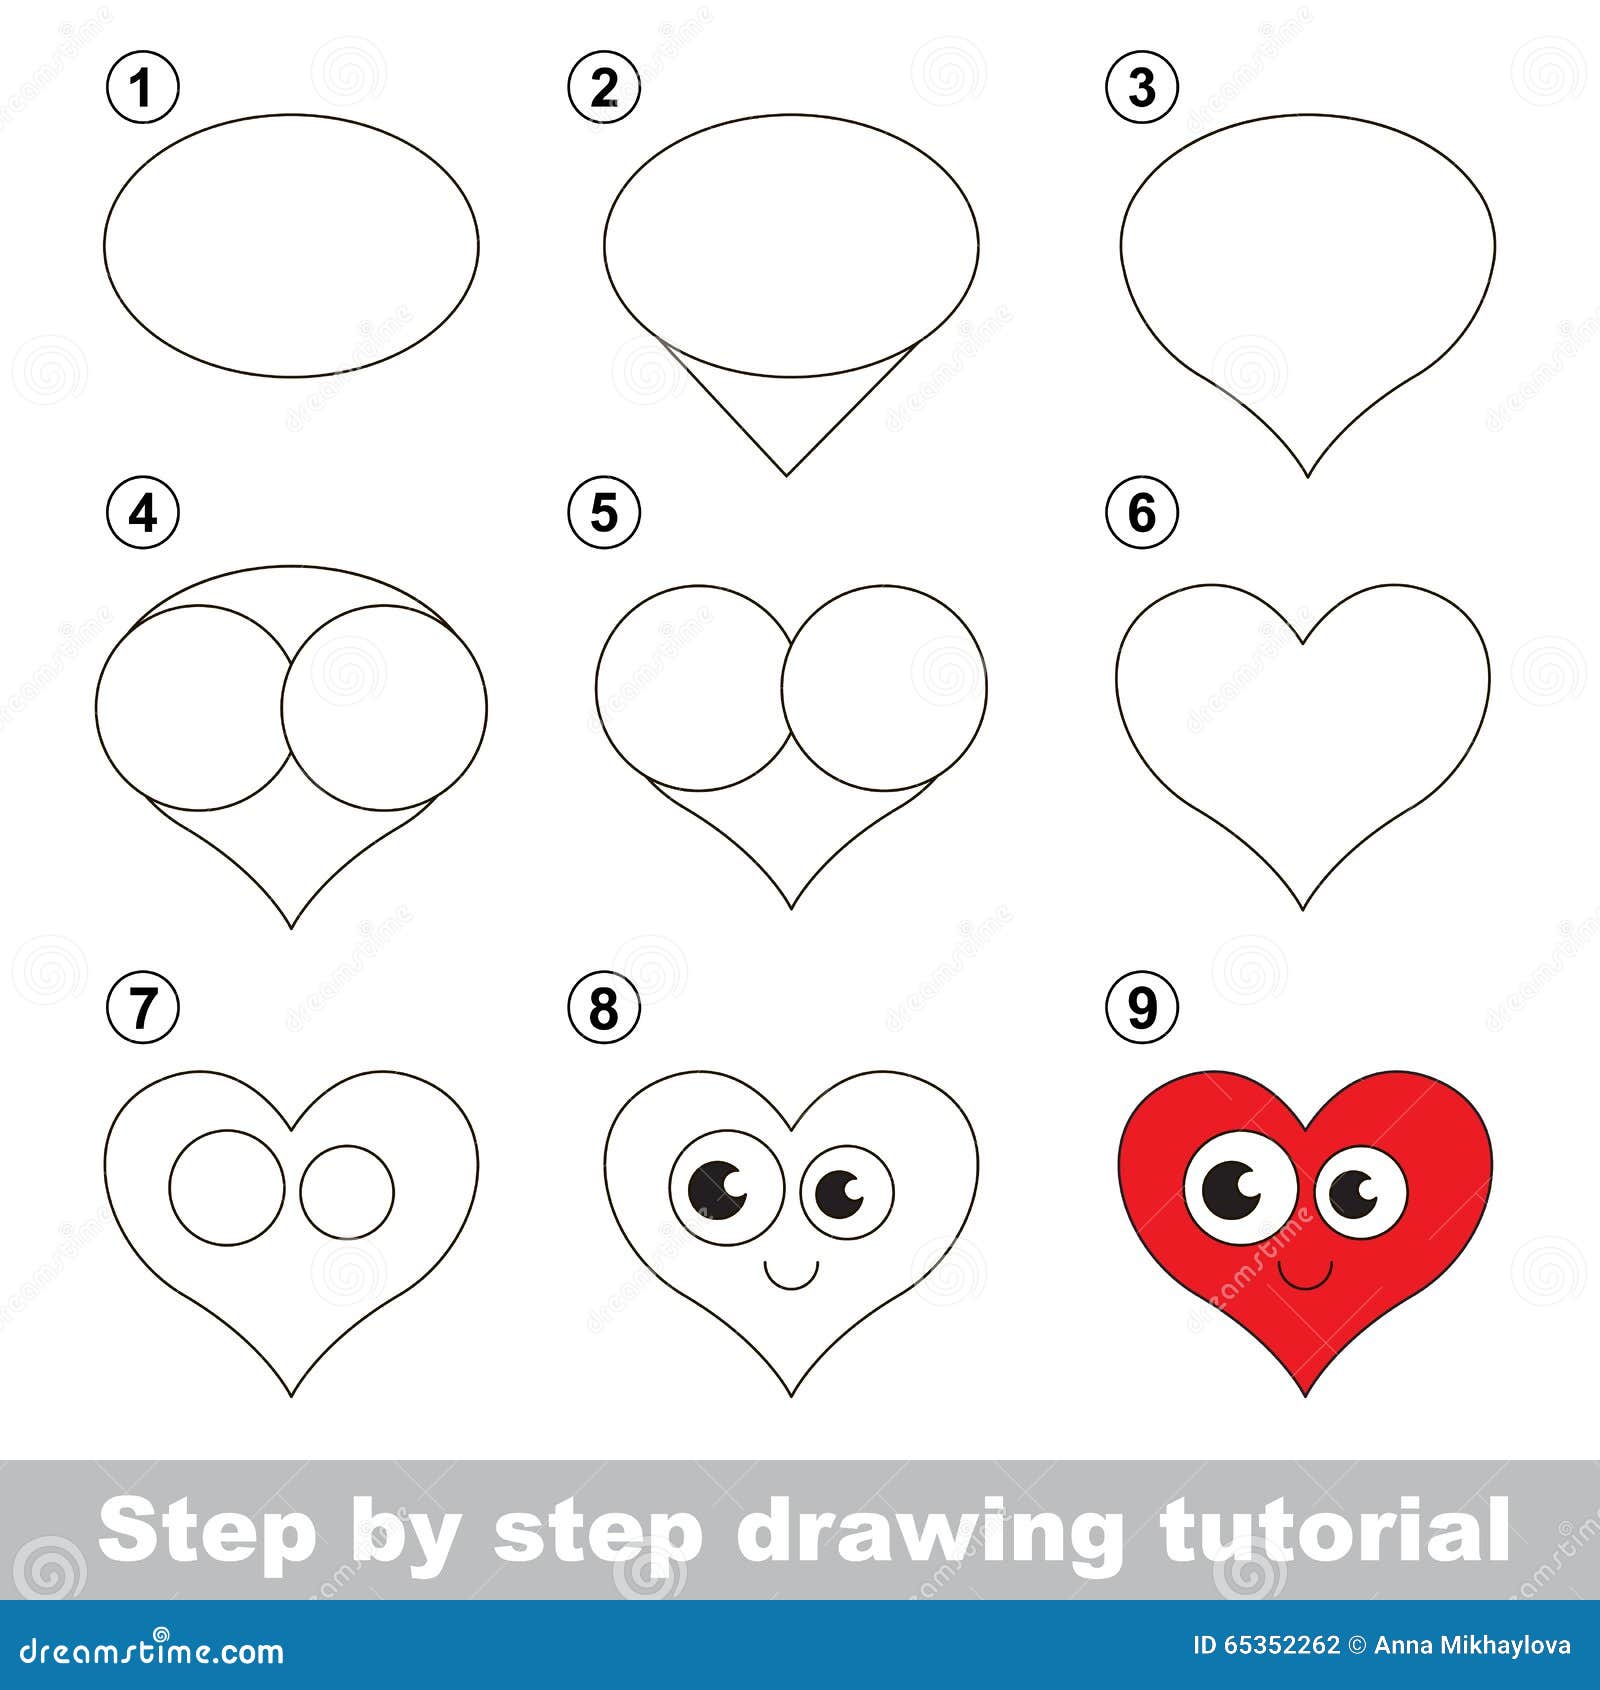 Comment dessiner un coeur humain - Blog - Dessindigo